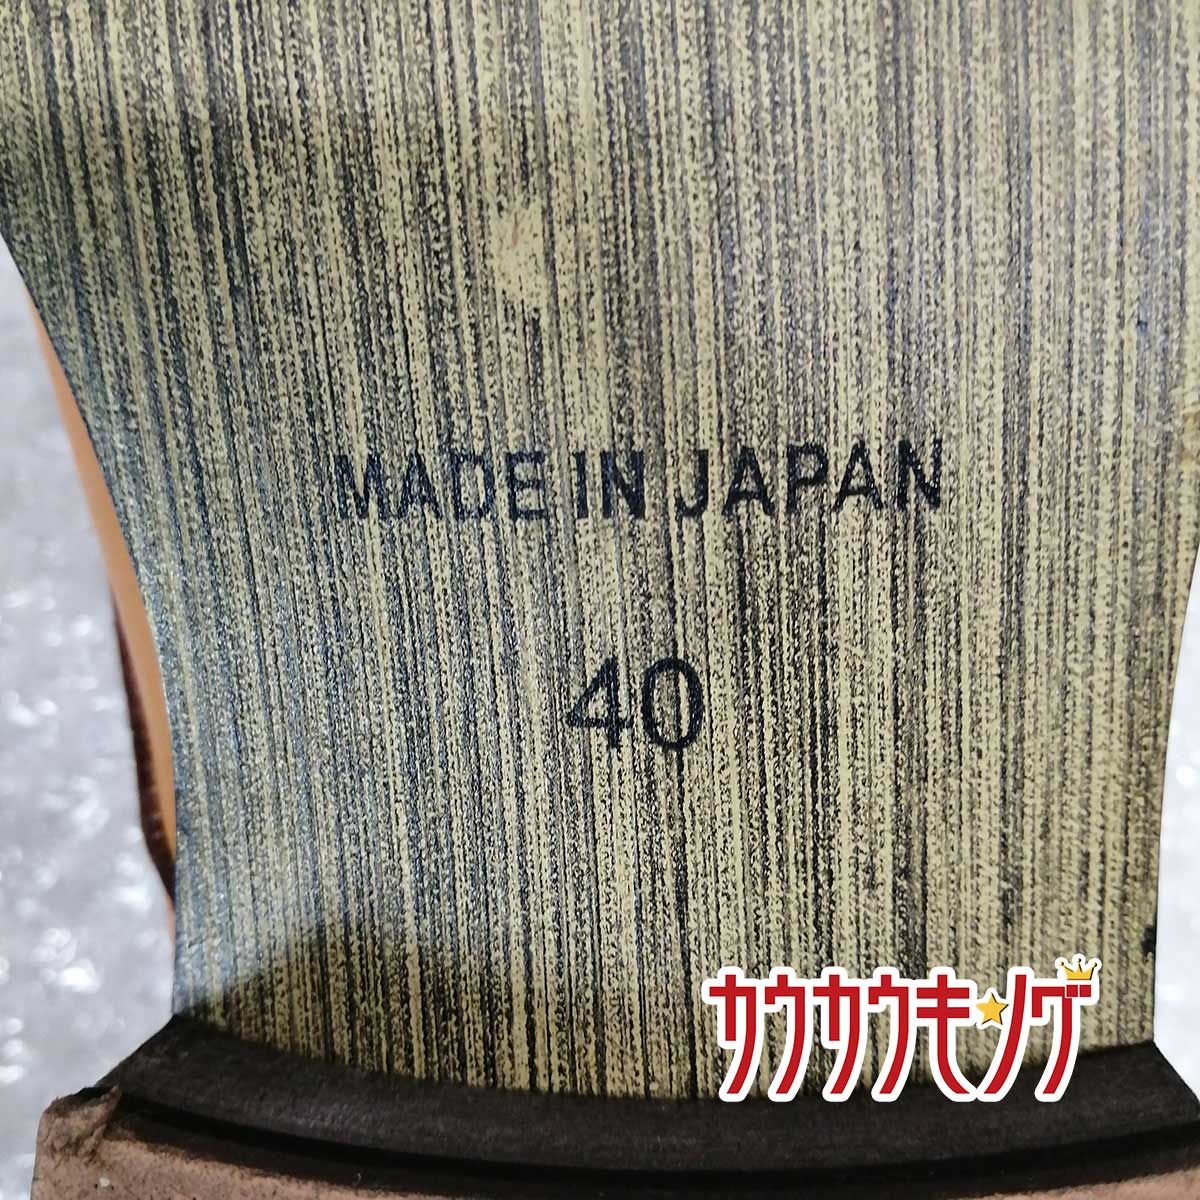 DEDESKEN シューズ ドレスシューズ MADE IN JAPAN プレーントゥオックスフォードレザーシューズ 25cm 10560 メンズ